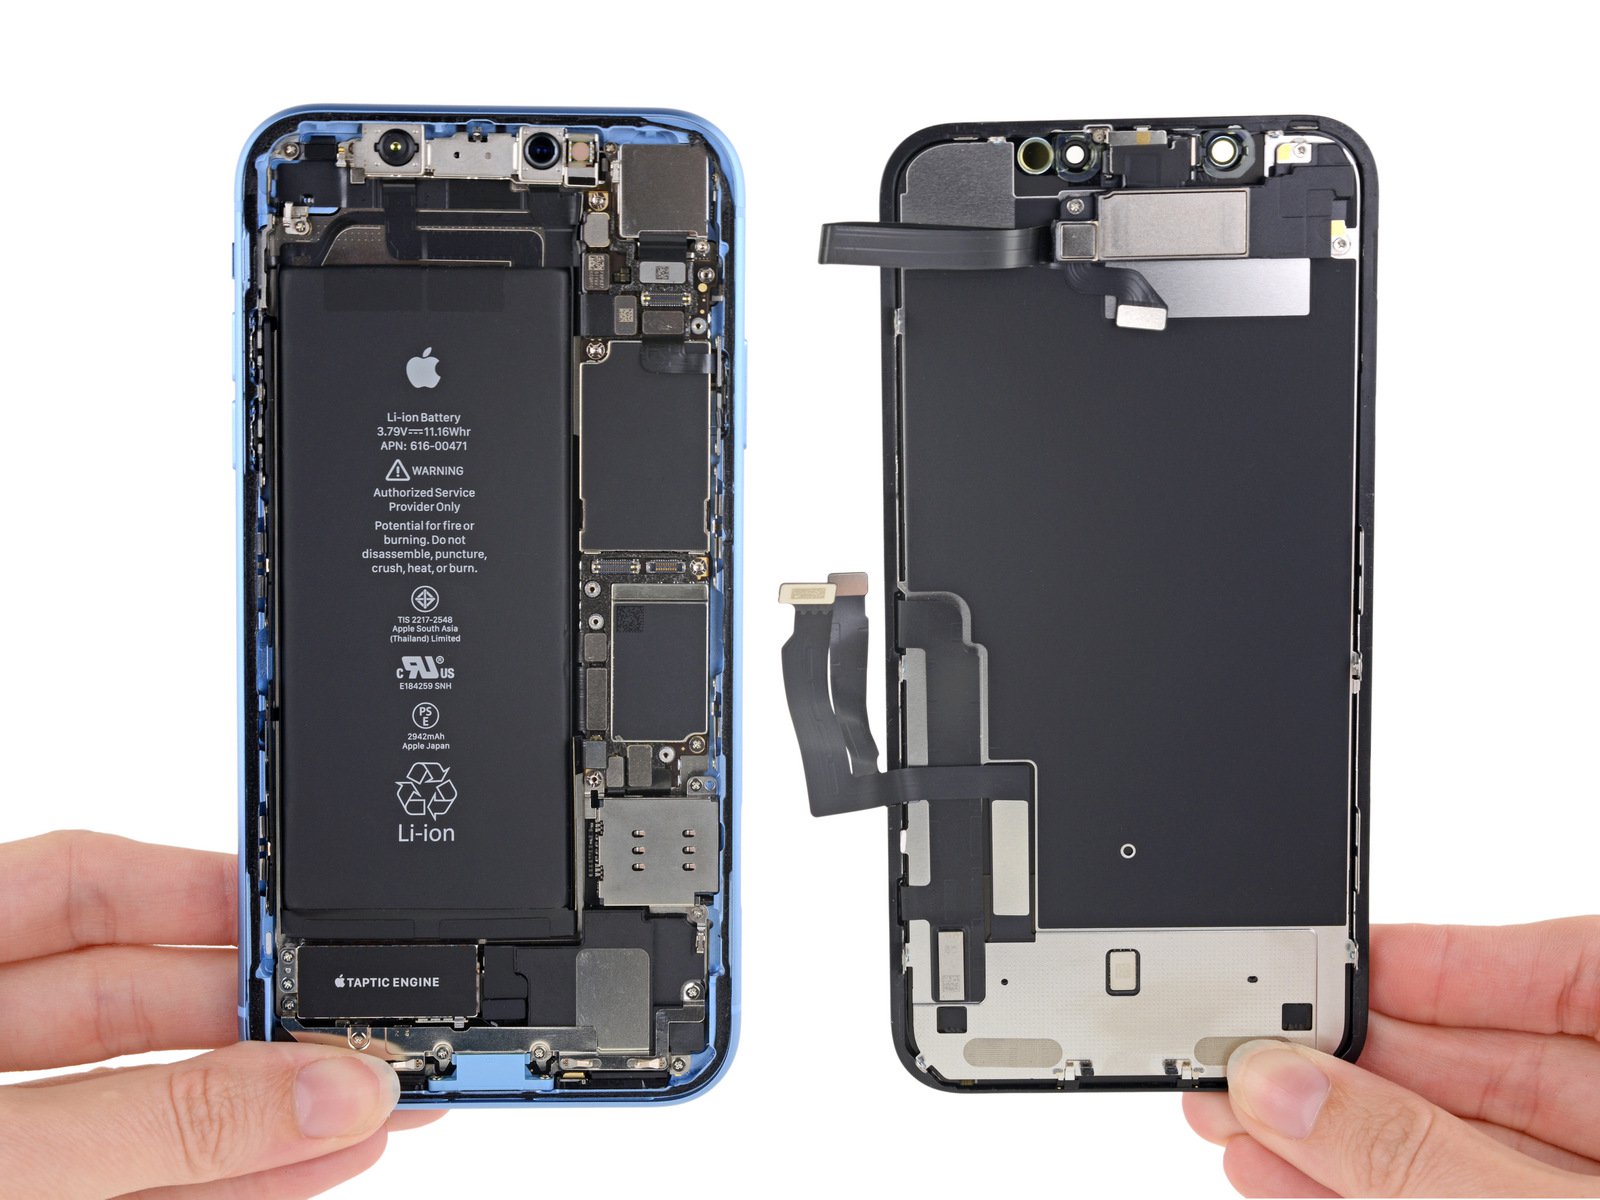 So sánh cấu hình iPhone Xs iPhone Xs Max và iPhone Xr